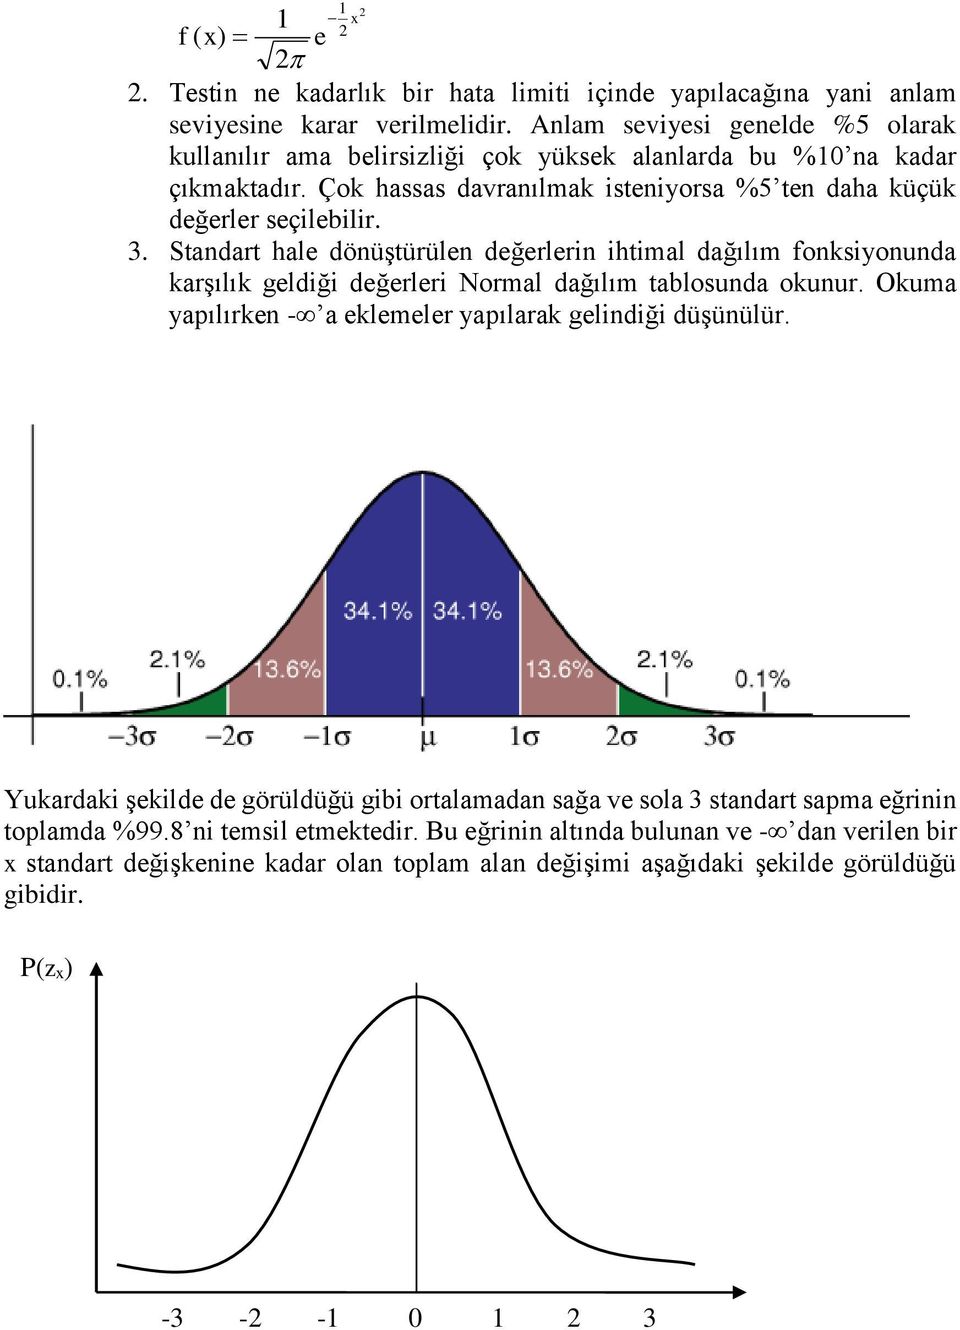 3. Stadart hale döüştürüle değerler htmal dağılım foksyouda karşılık geldğ değerler Normal dağılım talosuda okuur.